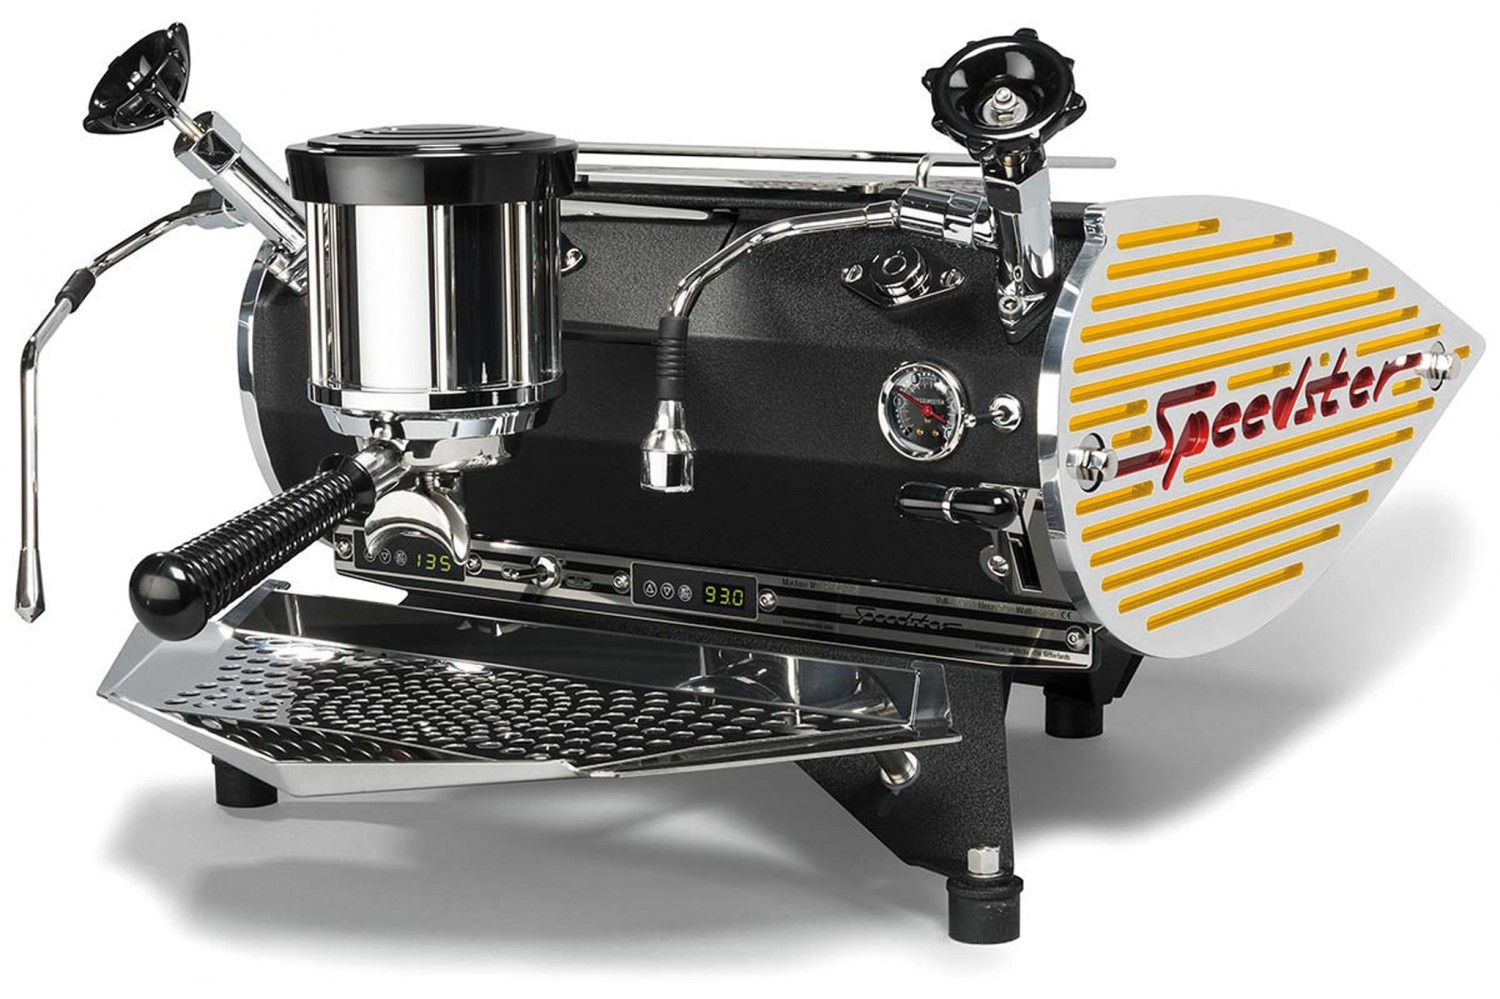 Espressomaschine Kees van der Westen Speedster im Test, Bild 2